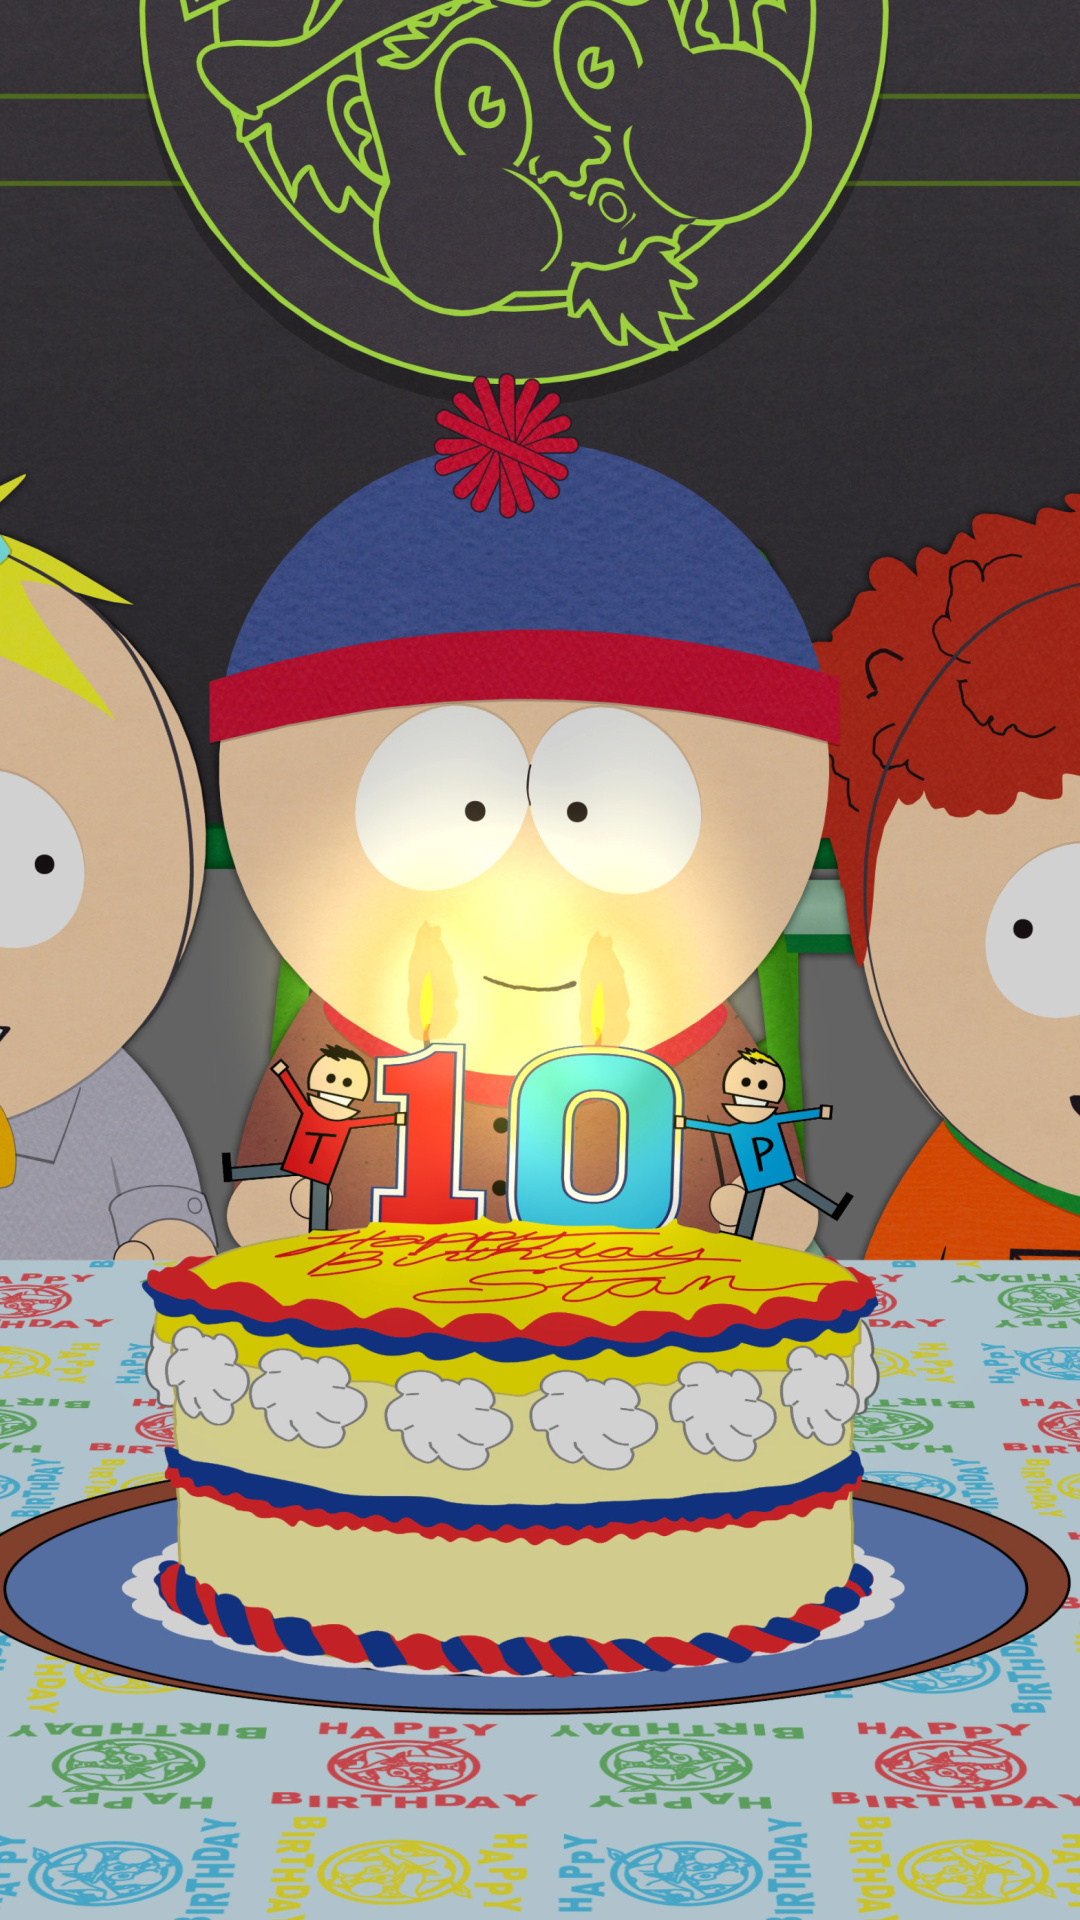 South Park Season 15 Stans Party screenshot #1 1080x1920